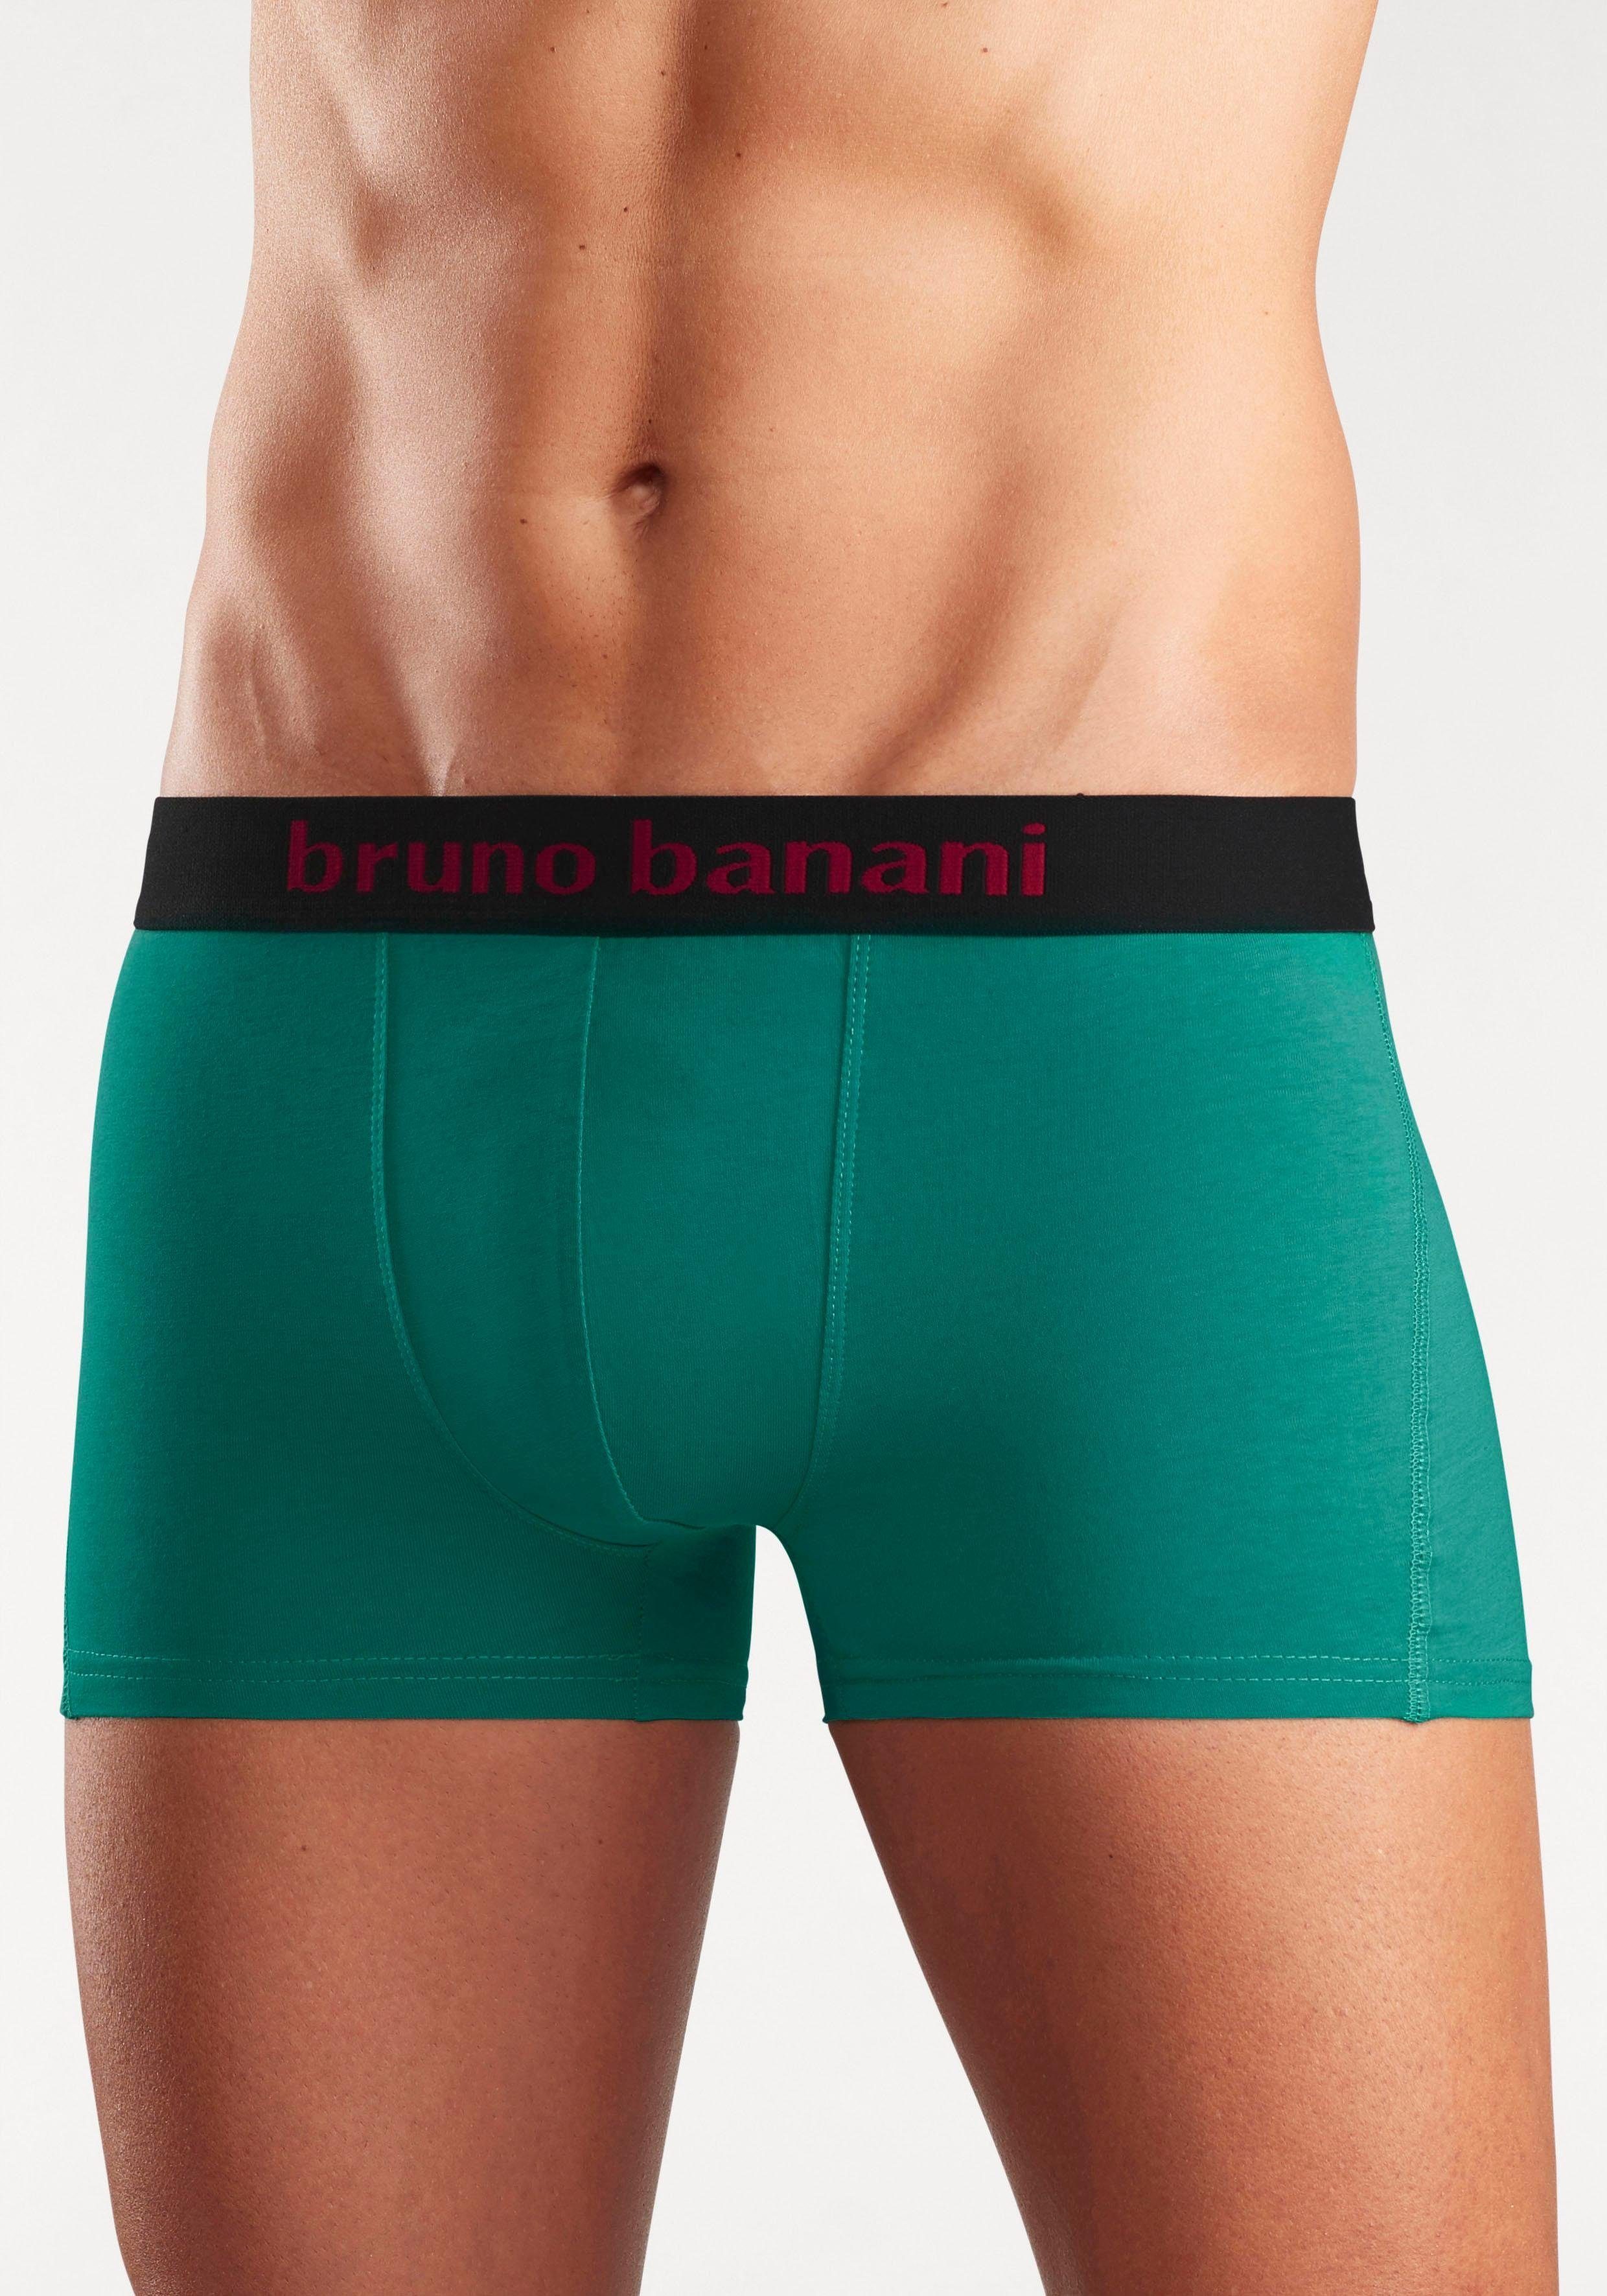 mit farbigen grün Banani am 4-St) Bruno Bündchen blau, Marken-Schriftzug Boxer rot, marine, (Packung,